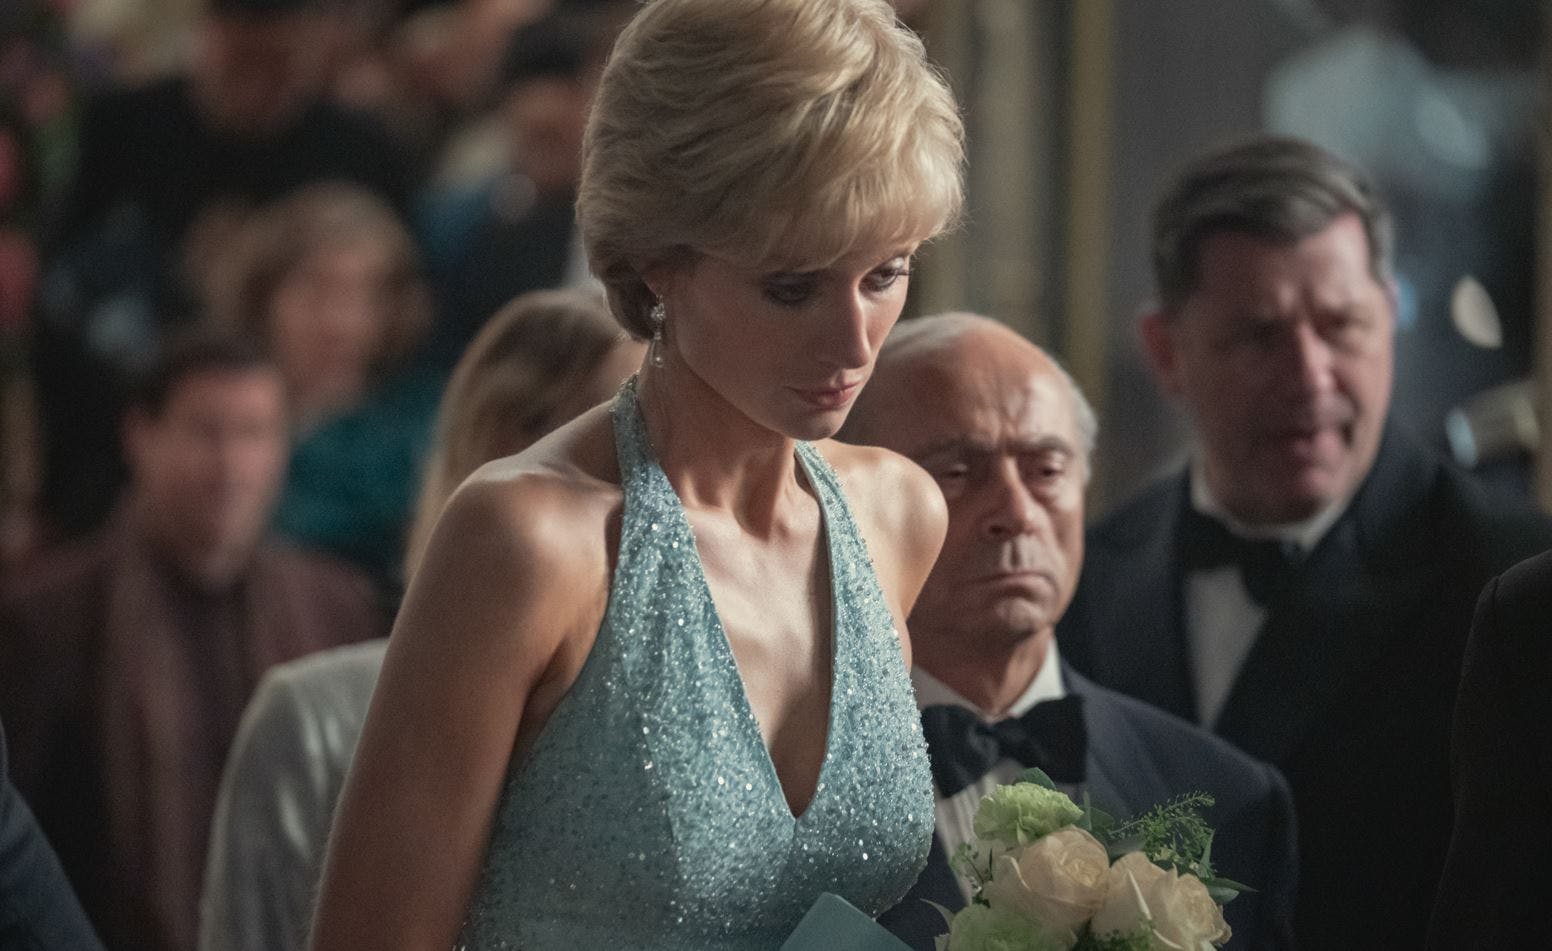 Elizabeth Debicki spiller rollen som prinsesse Diana i den kommende sæson af "The Crown". Der har tidligere været spekulationer om, at også den del af serien vil skabe vrede og debat.
